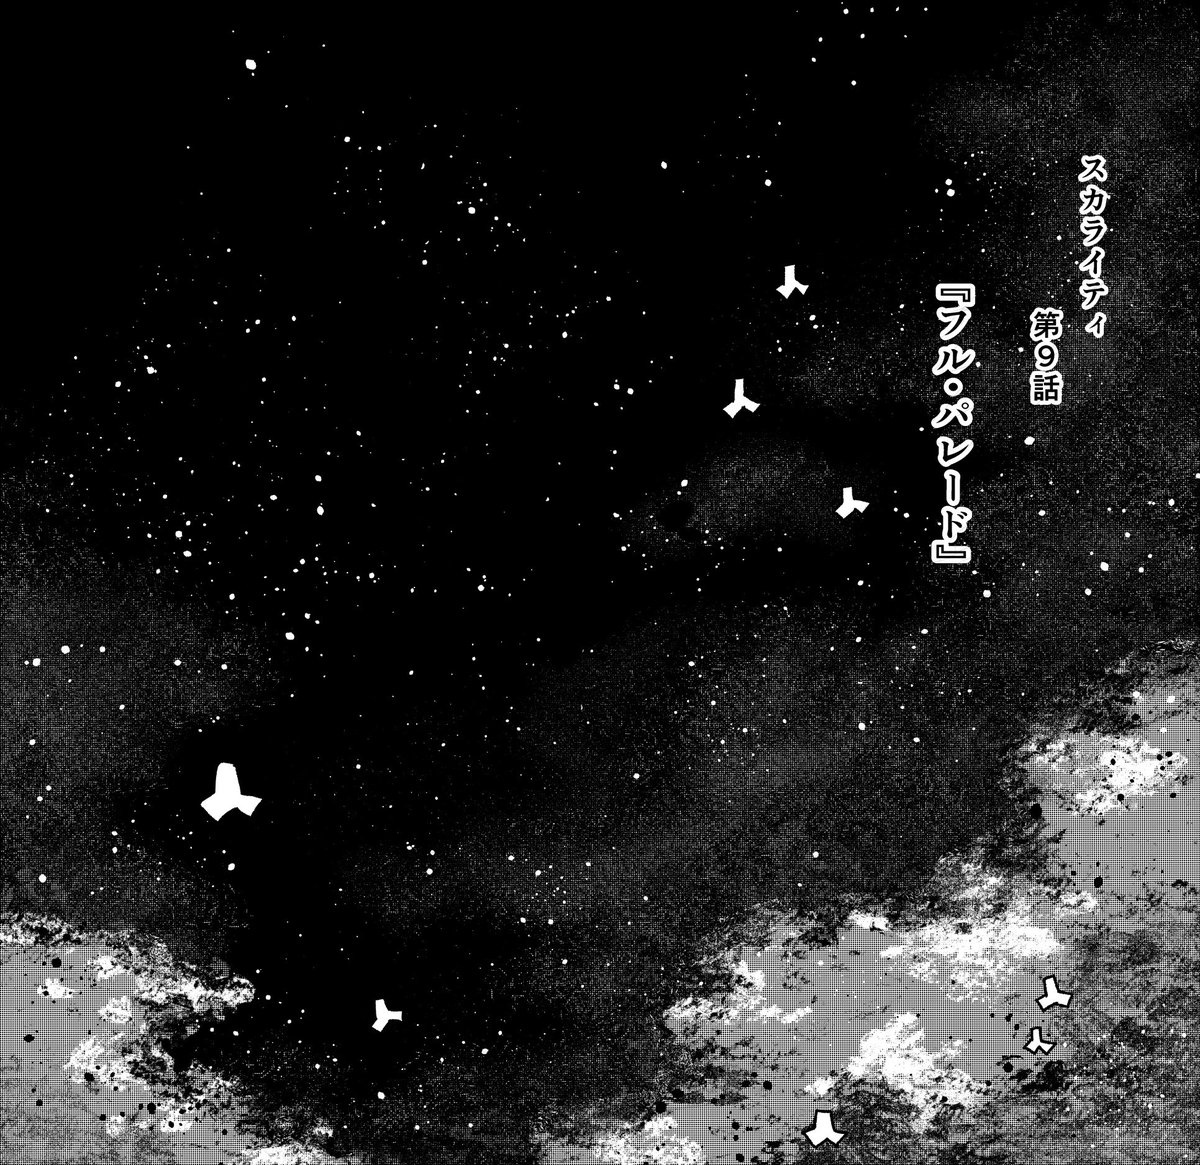 本日発売の月刊!スピリッツ3月号にて、スカライティ第9話目掲載中です。

いい空が描けてよかったです。
あと、星座とヘラクレスオオカブトをたくさん描けてよかったです。 